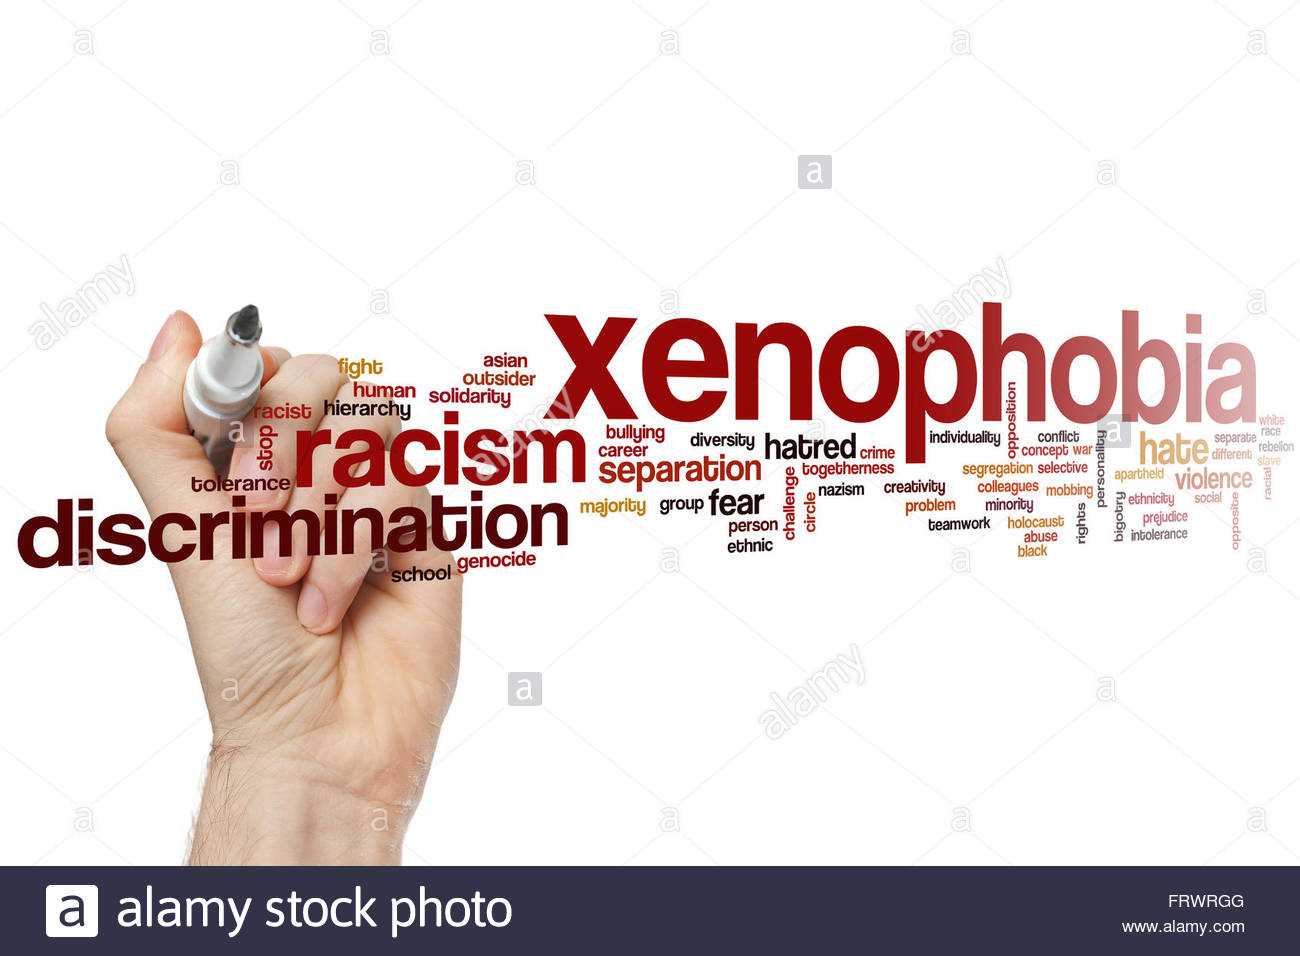 Что такое ксенофобия и как с ней бороться